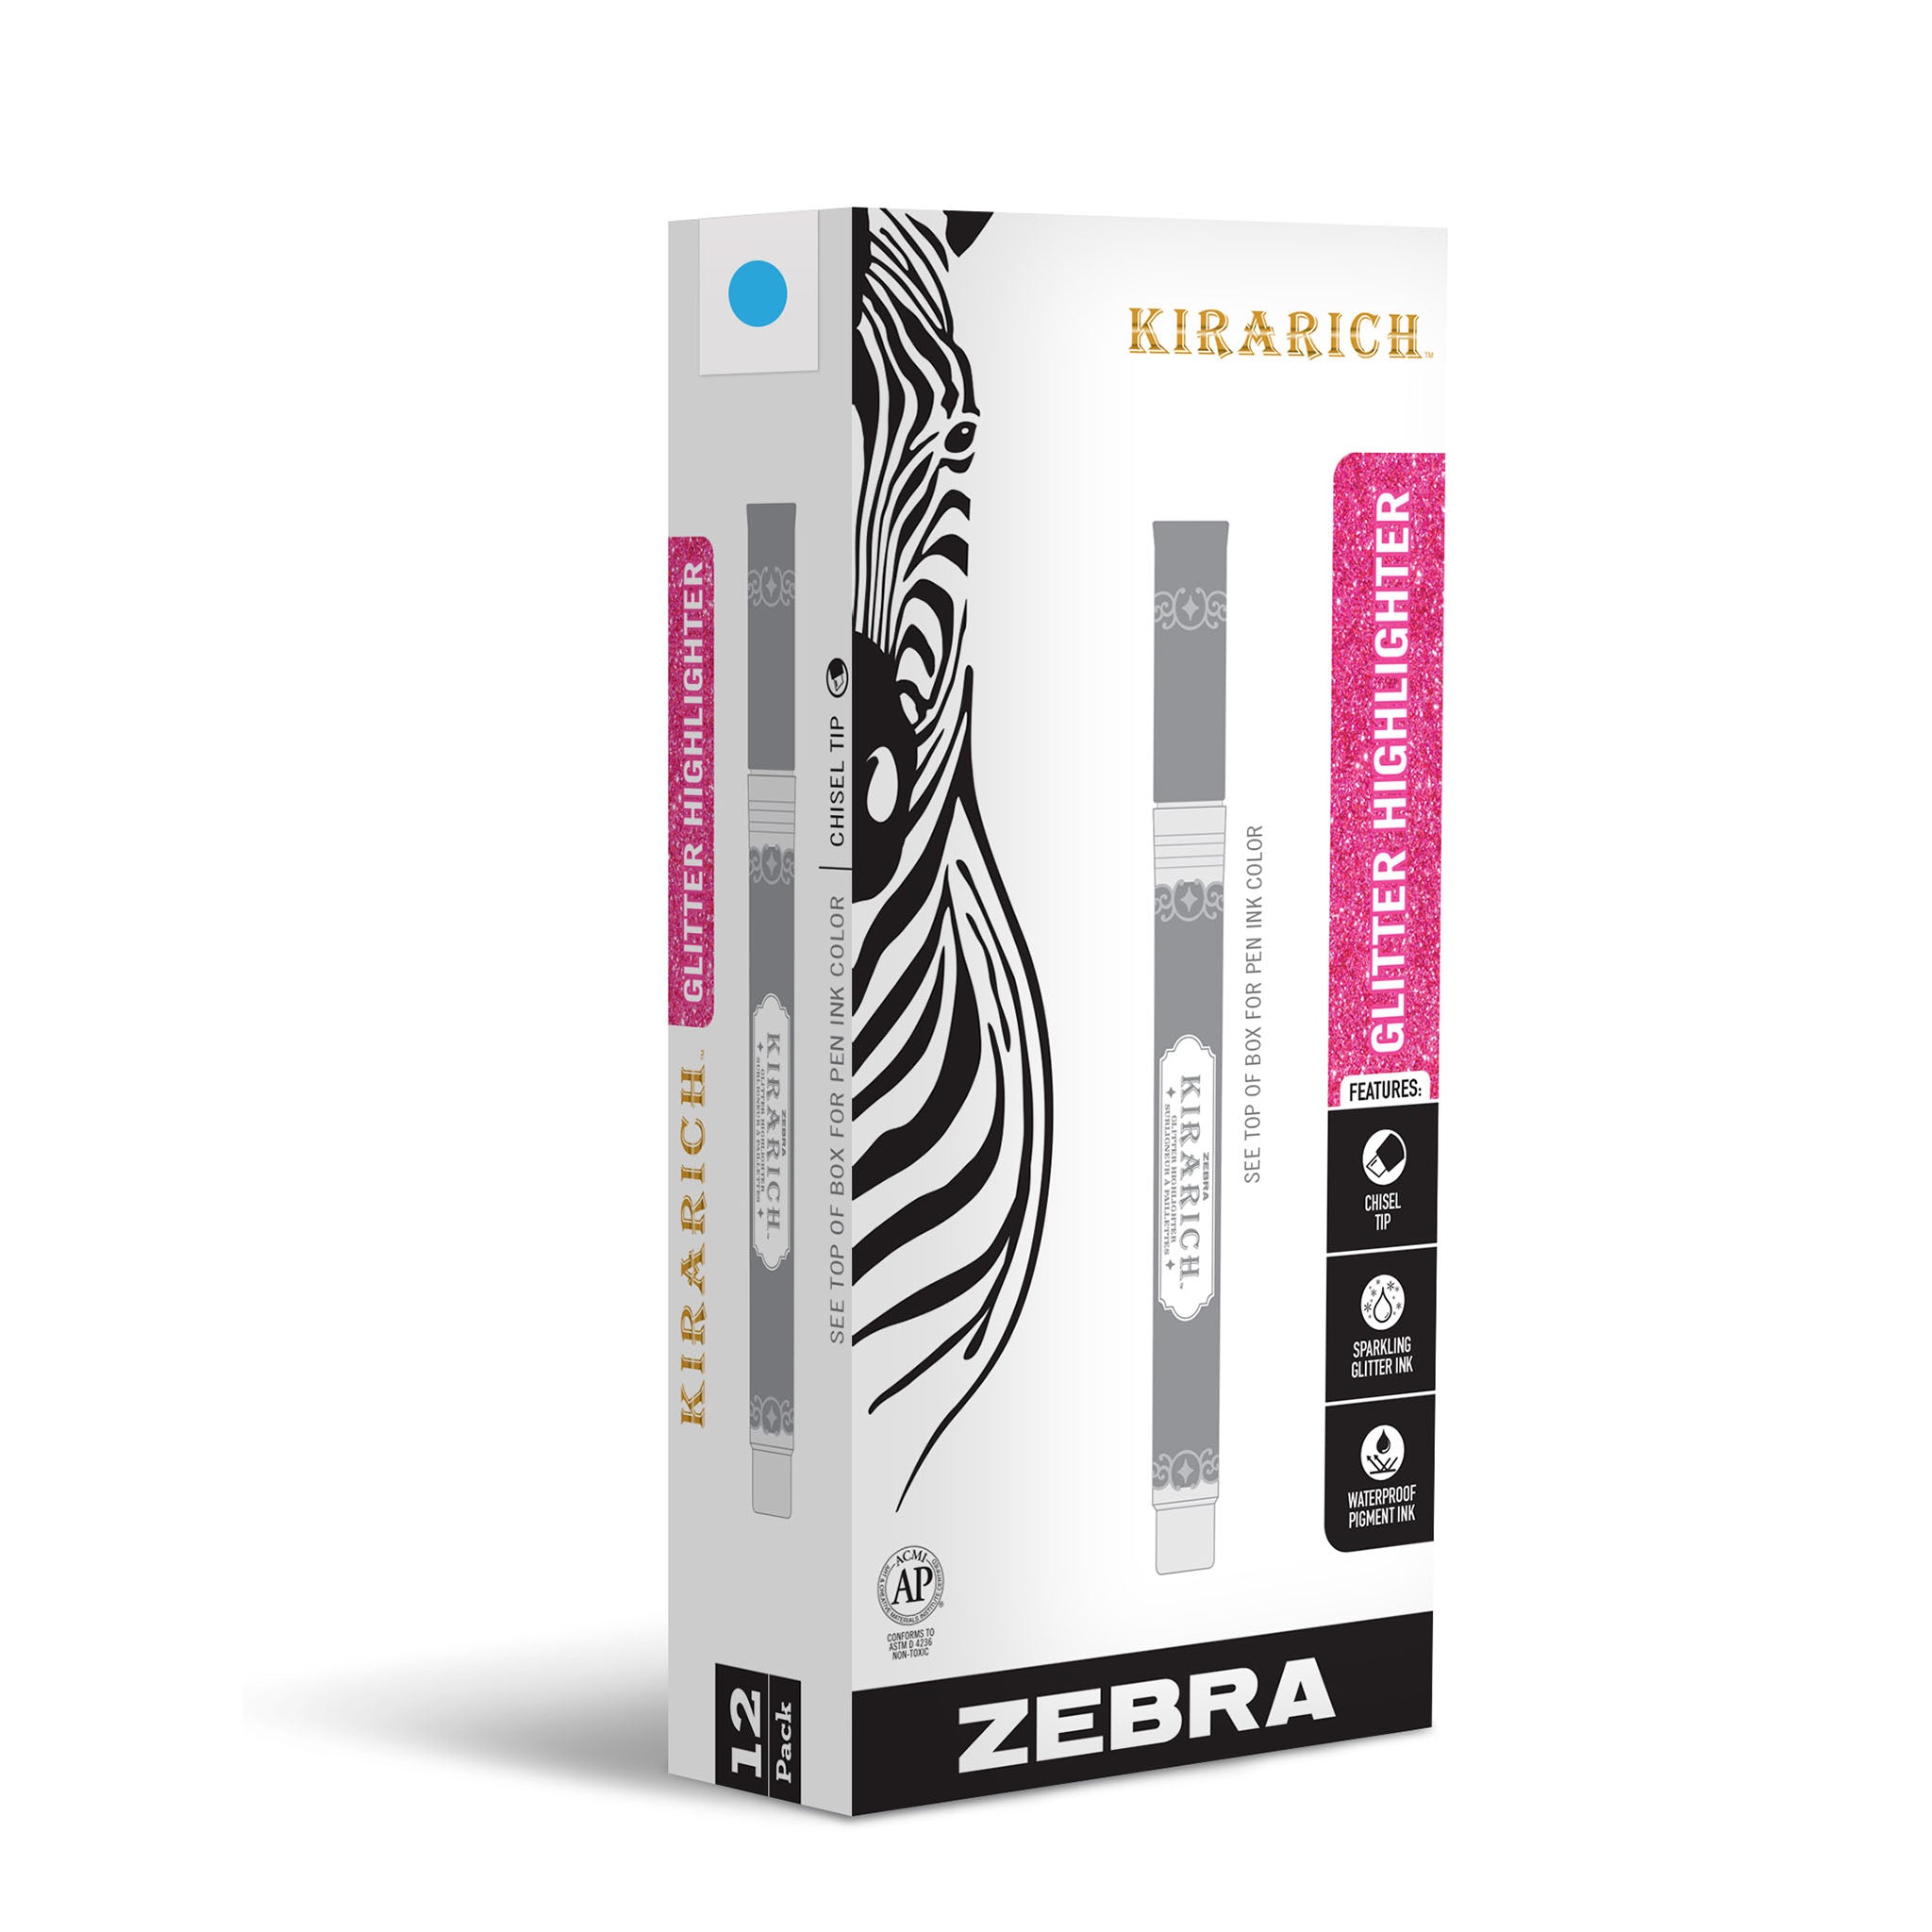 Zebra Kirarich WKS18 Glitter Highlighter - Blue